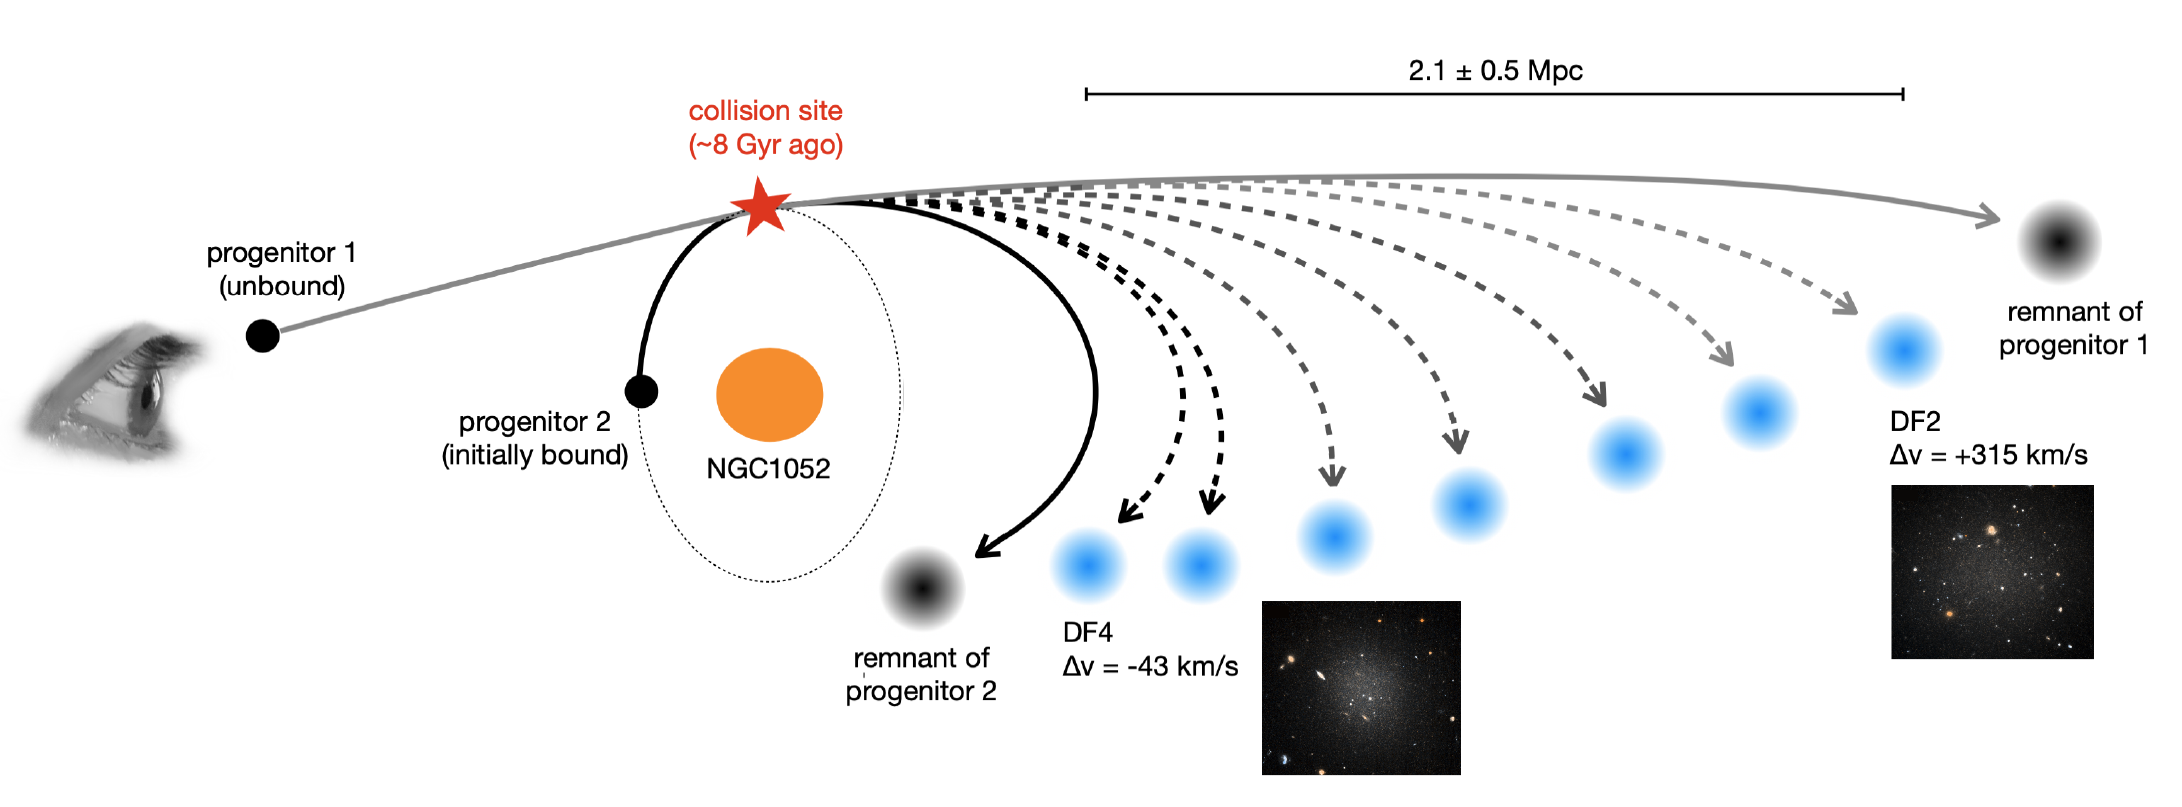 Схема, показывающая галактику ("предок 1"(приближается ко второй галактике)"предок 2"), которая вращается вокруг множества ("NGC1052").  Точка на орбите Ancestor 2 была названа местом столкновения этих двух галактик.  Затем эти две галактики кажутся разделенными на семь меньших тел, а также два из них "останки"черным цветом, чтобы обозначить их высокое содержание темной материи.